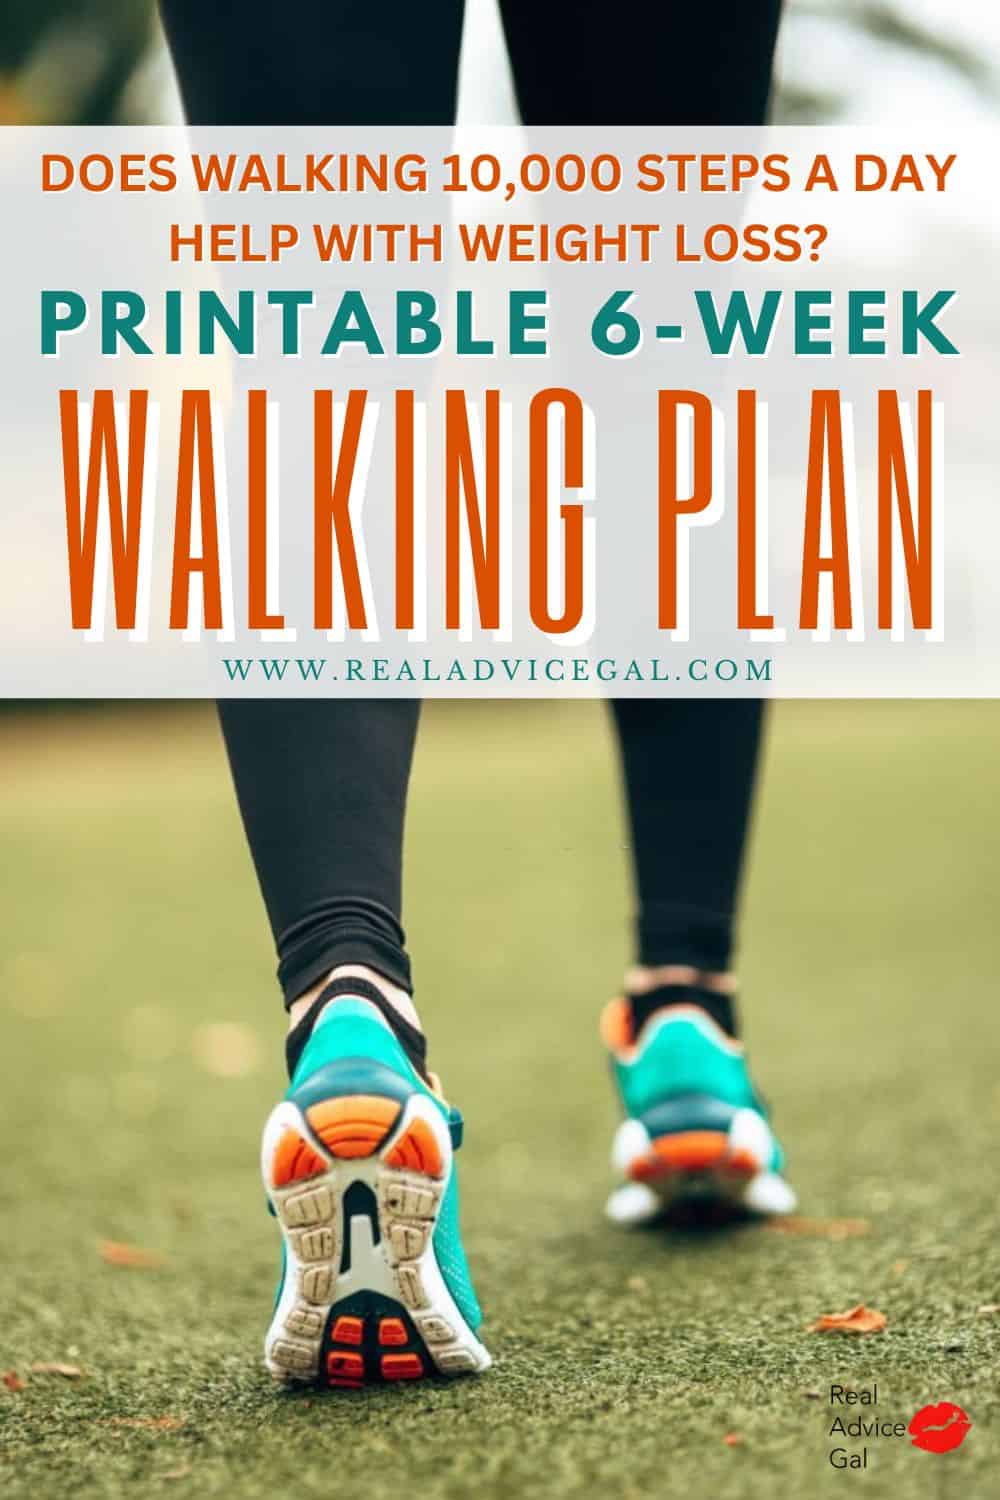 Walk more to lose weight. Get our free printable walking plan